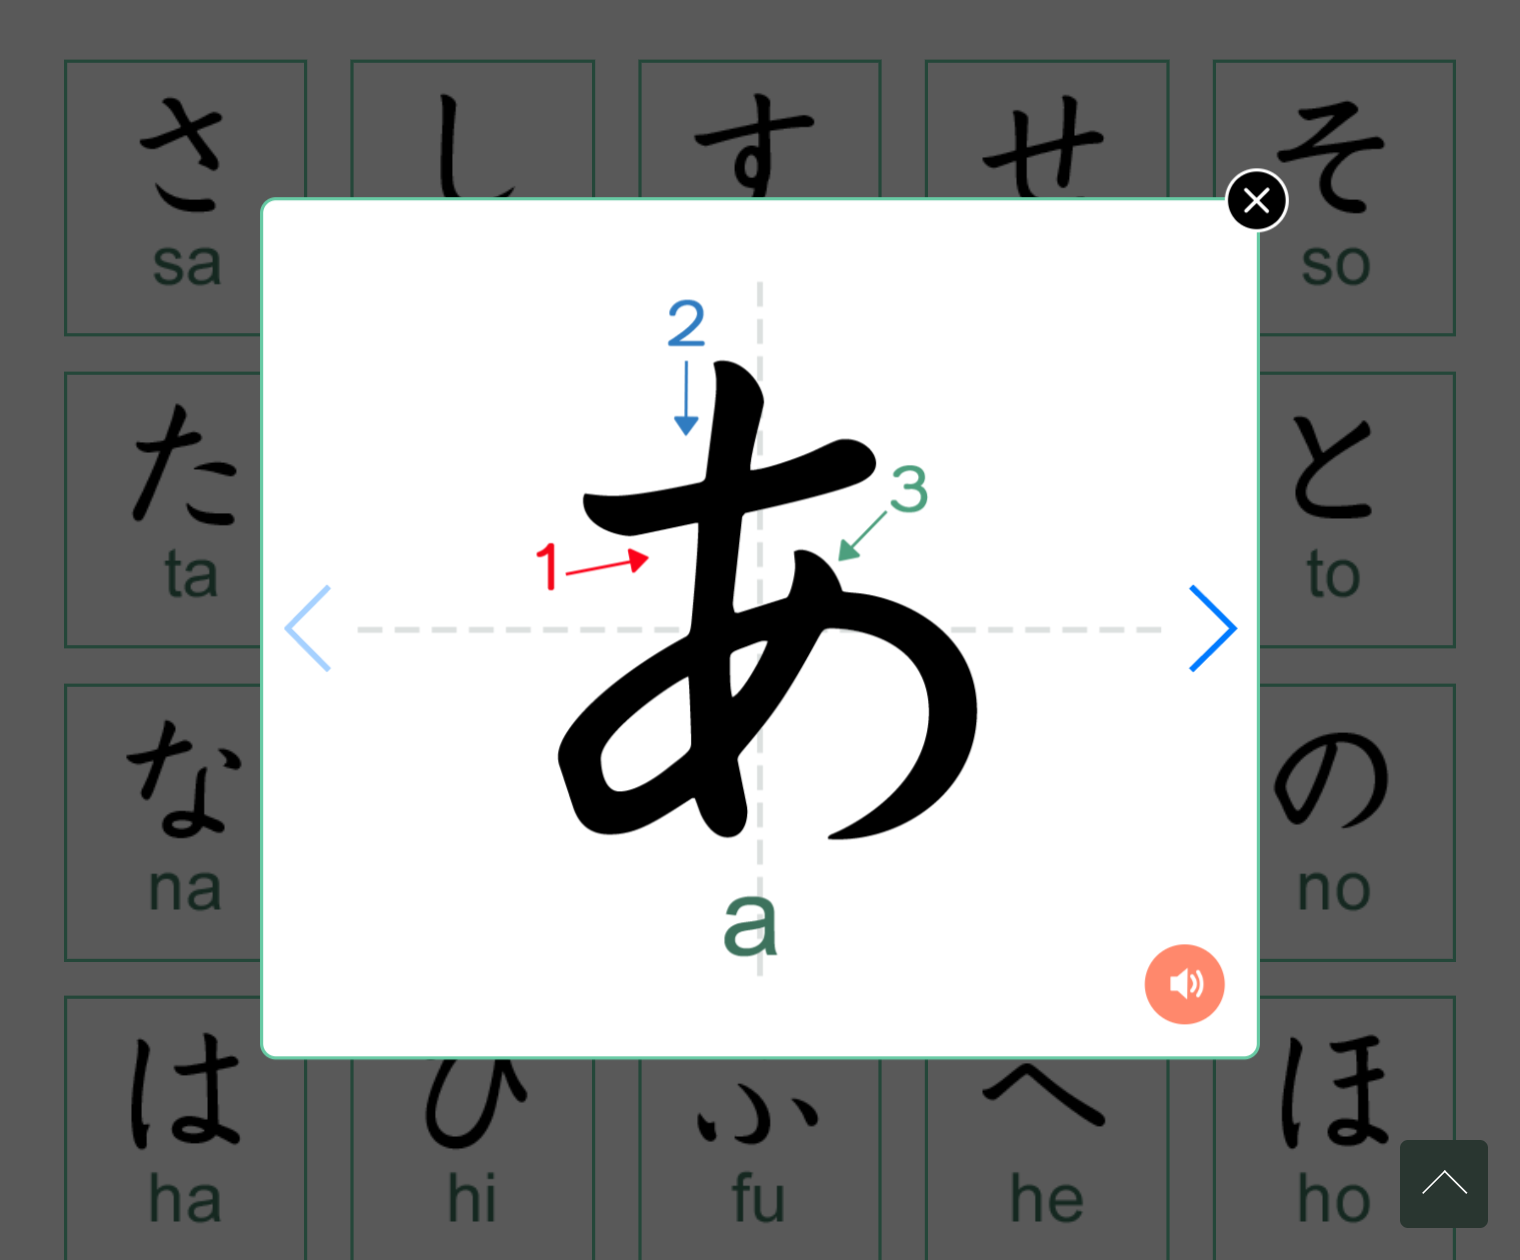 На сайте можно посмотреть, как записывать знаки хираганы. Например, ぁ — букву А. Источник: nhk.or.jp